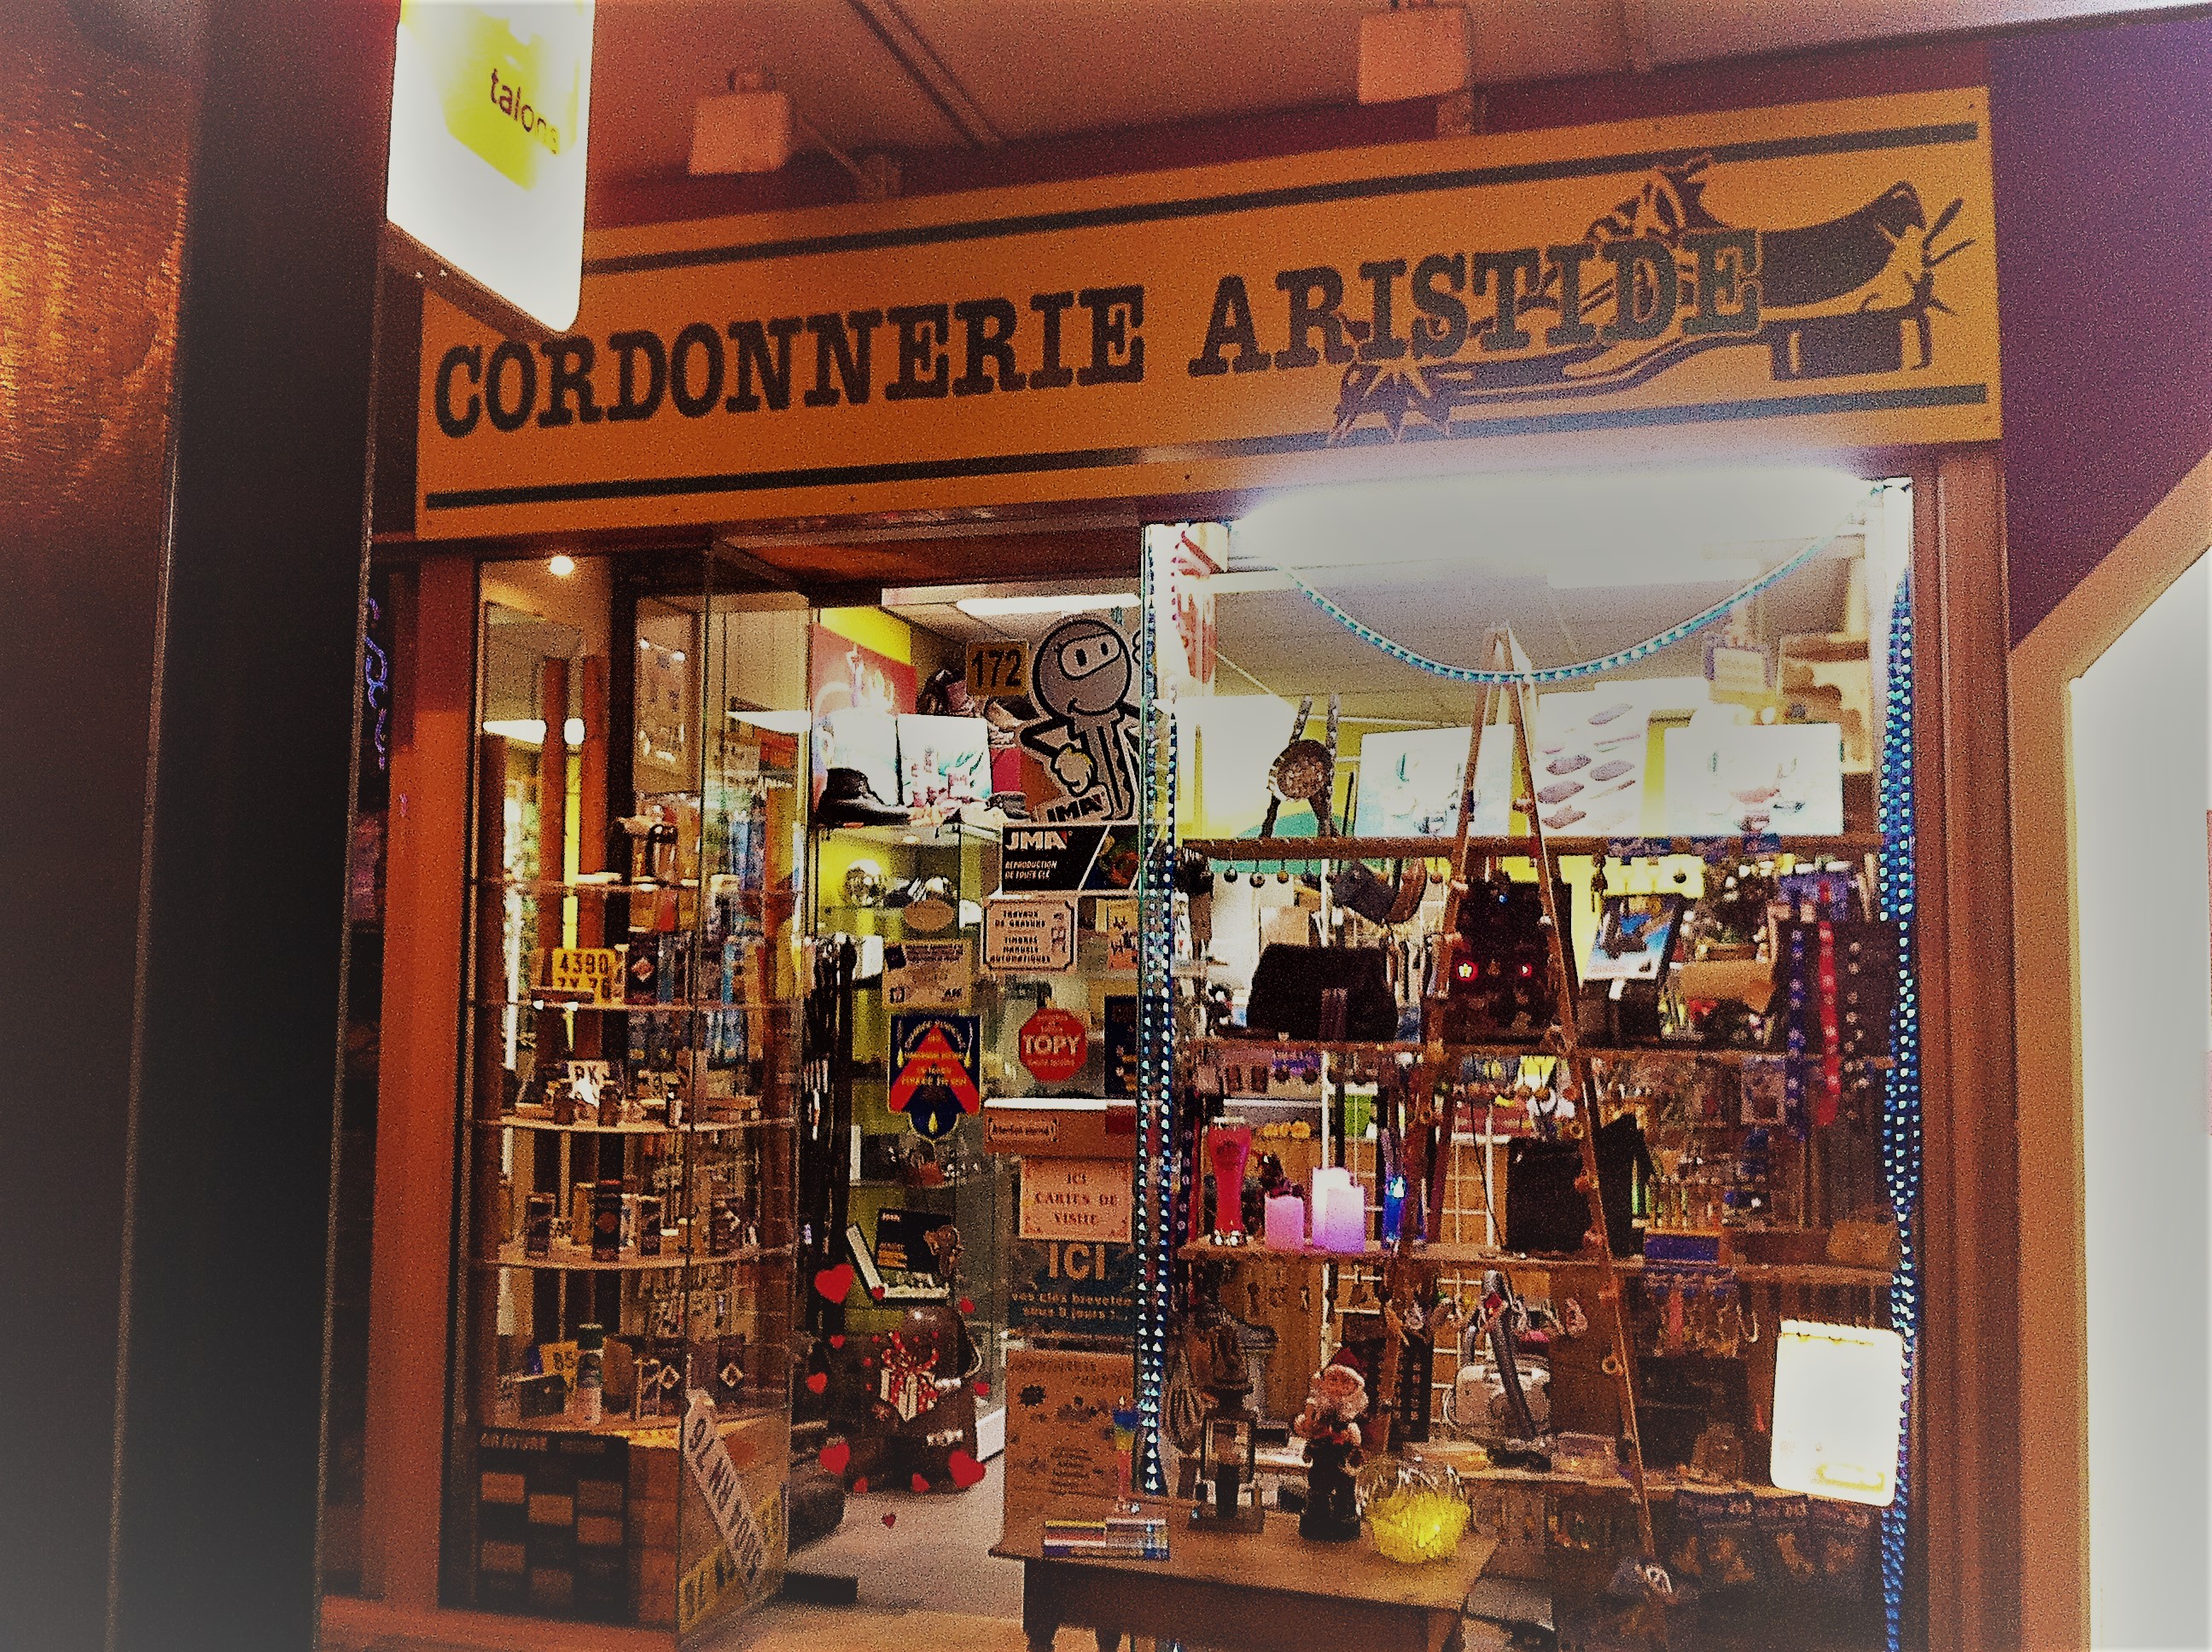 Cordonnerie traditionnelle entièrement équipée dans une rue commerçante bien située de la banlieue rouennaise.
24 ans d'activité.